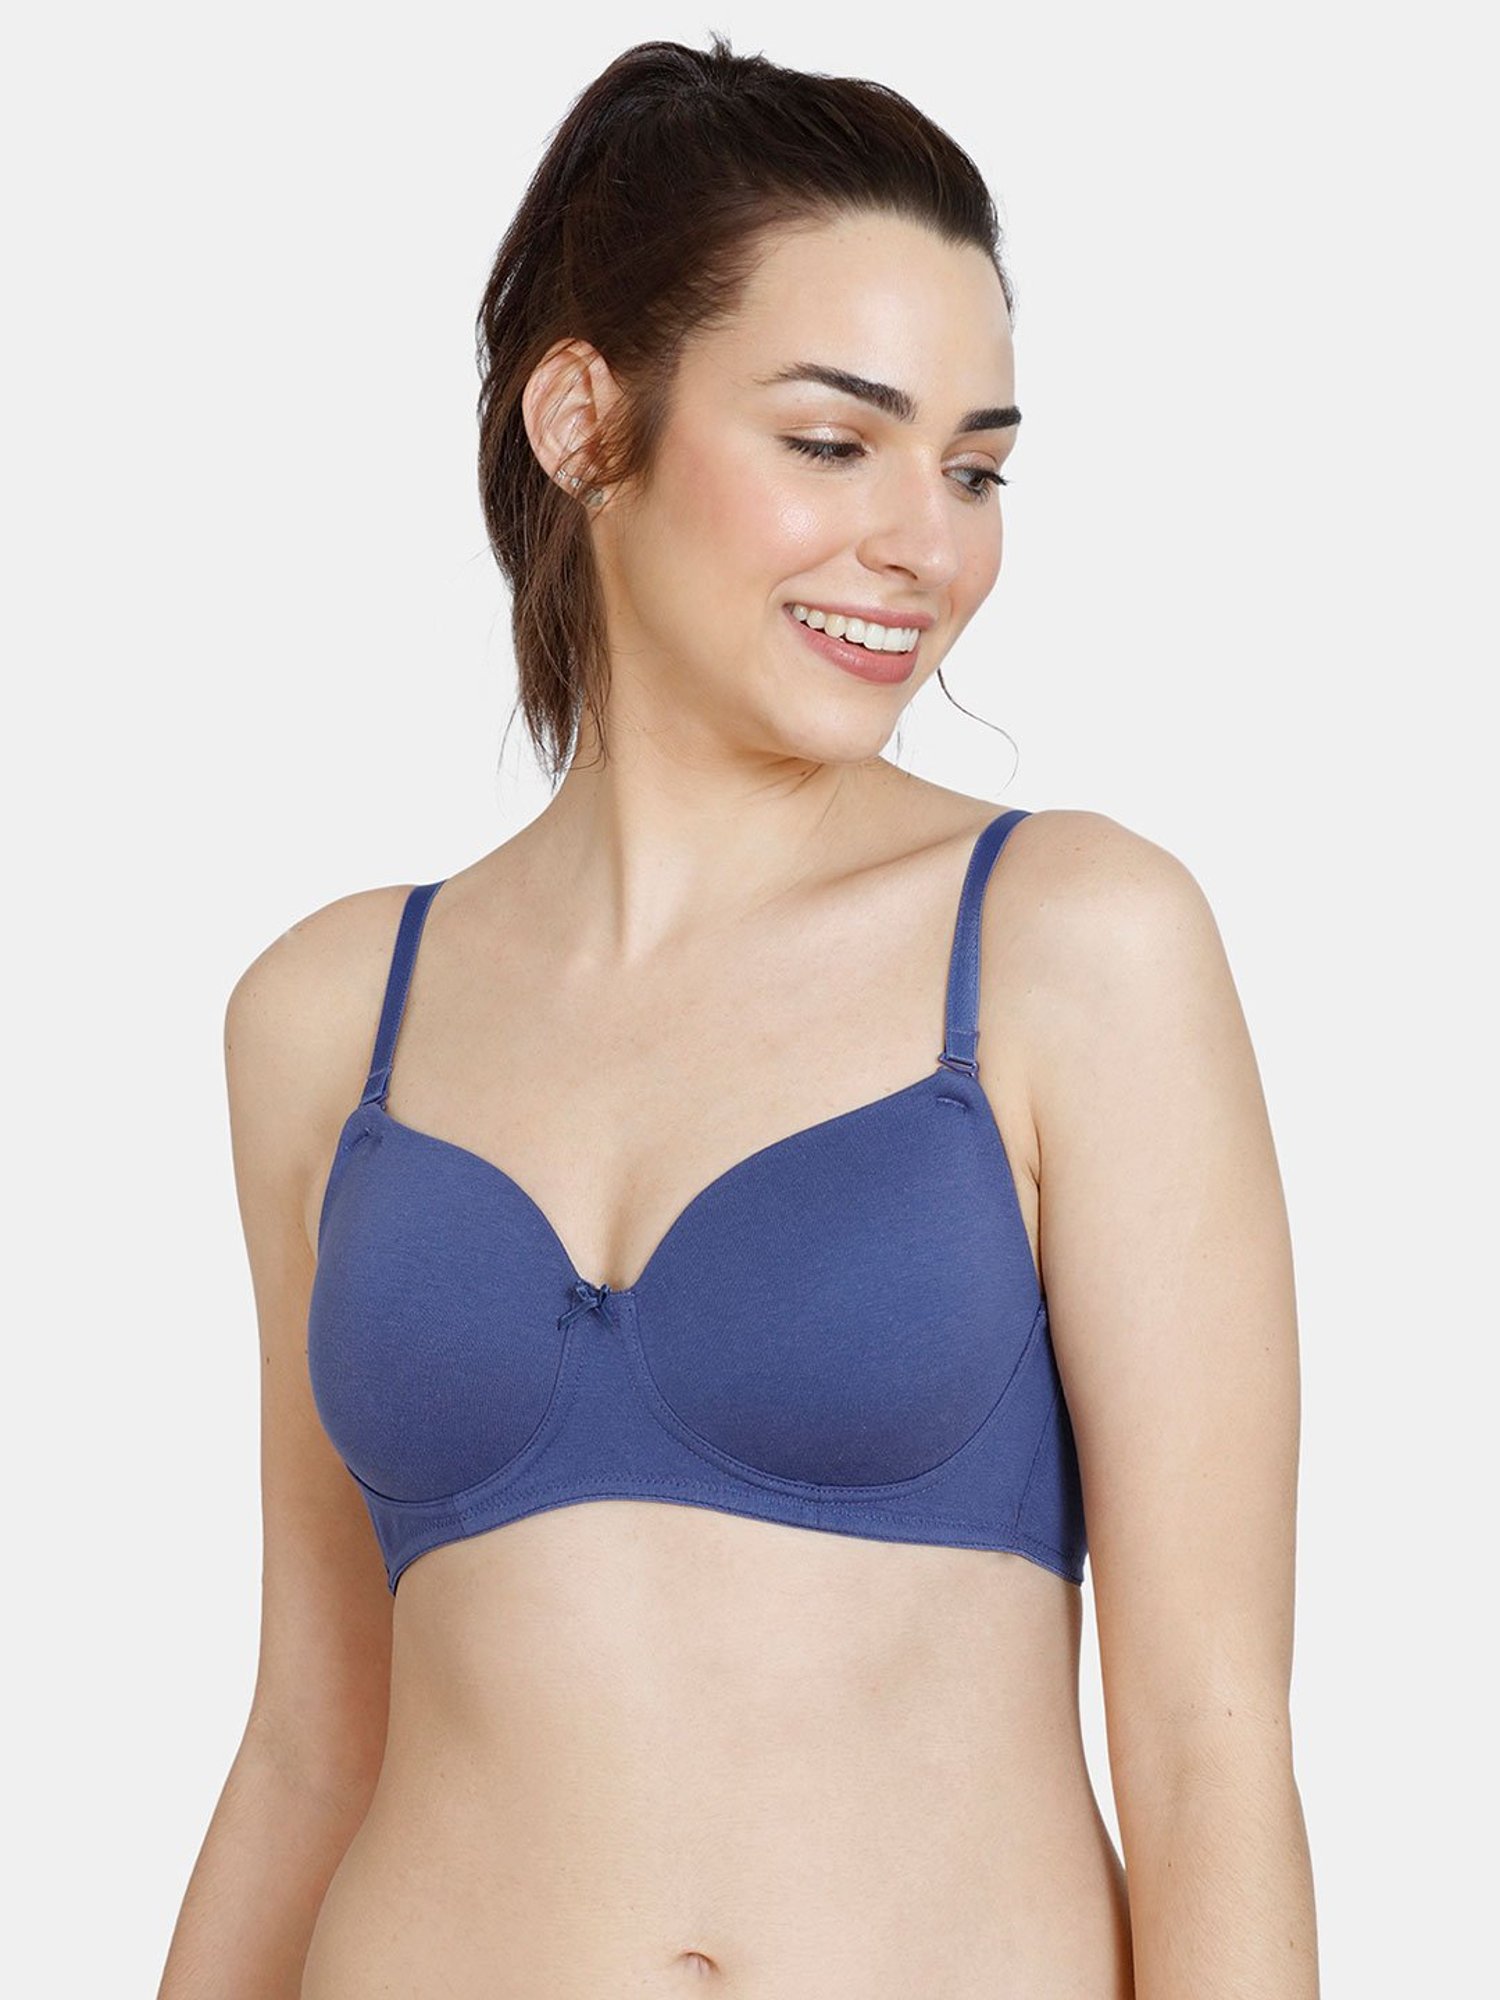 Buy online Blue Nylon Tshirt Bra from lingerie for Women by Zivame